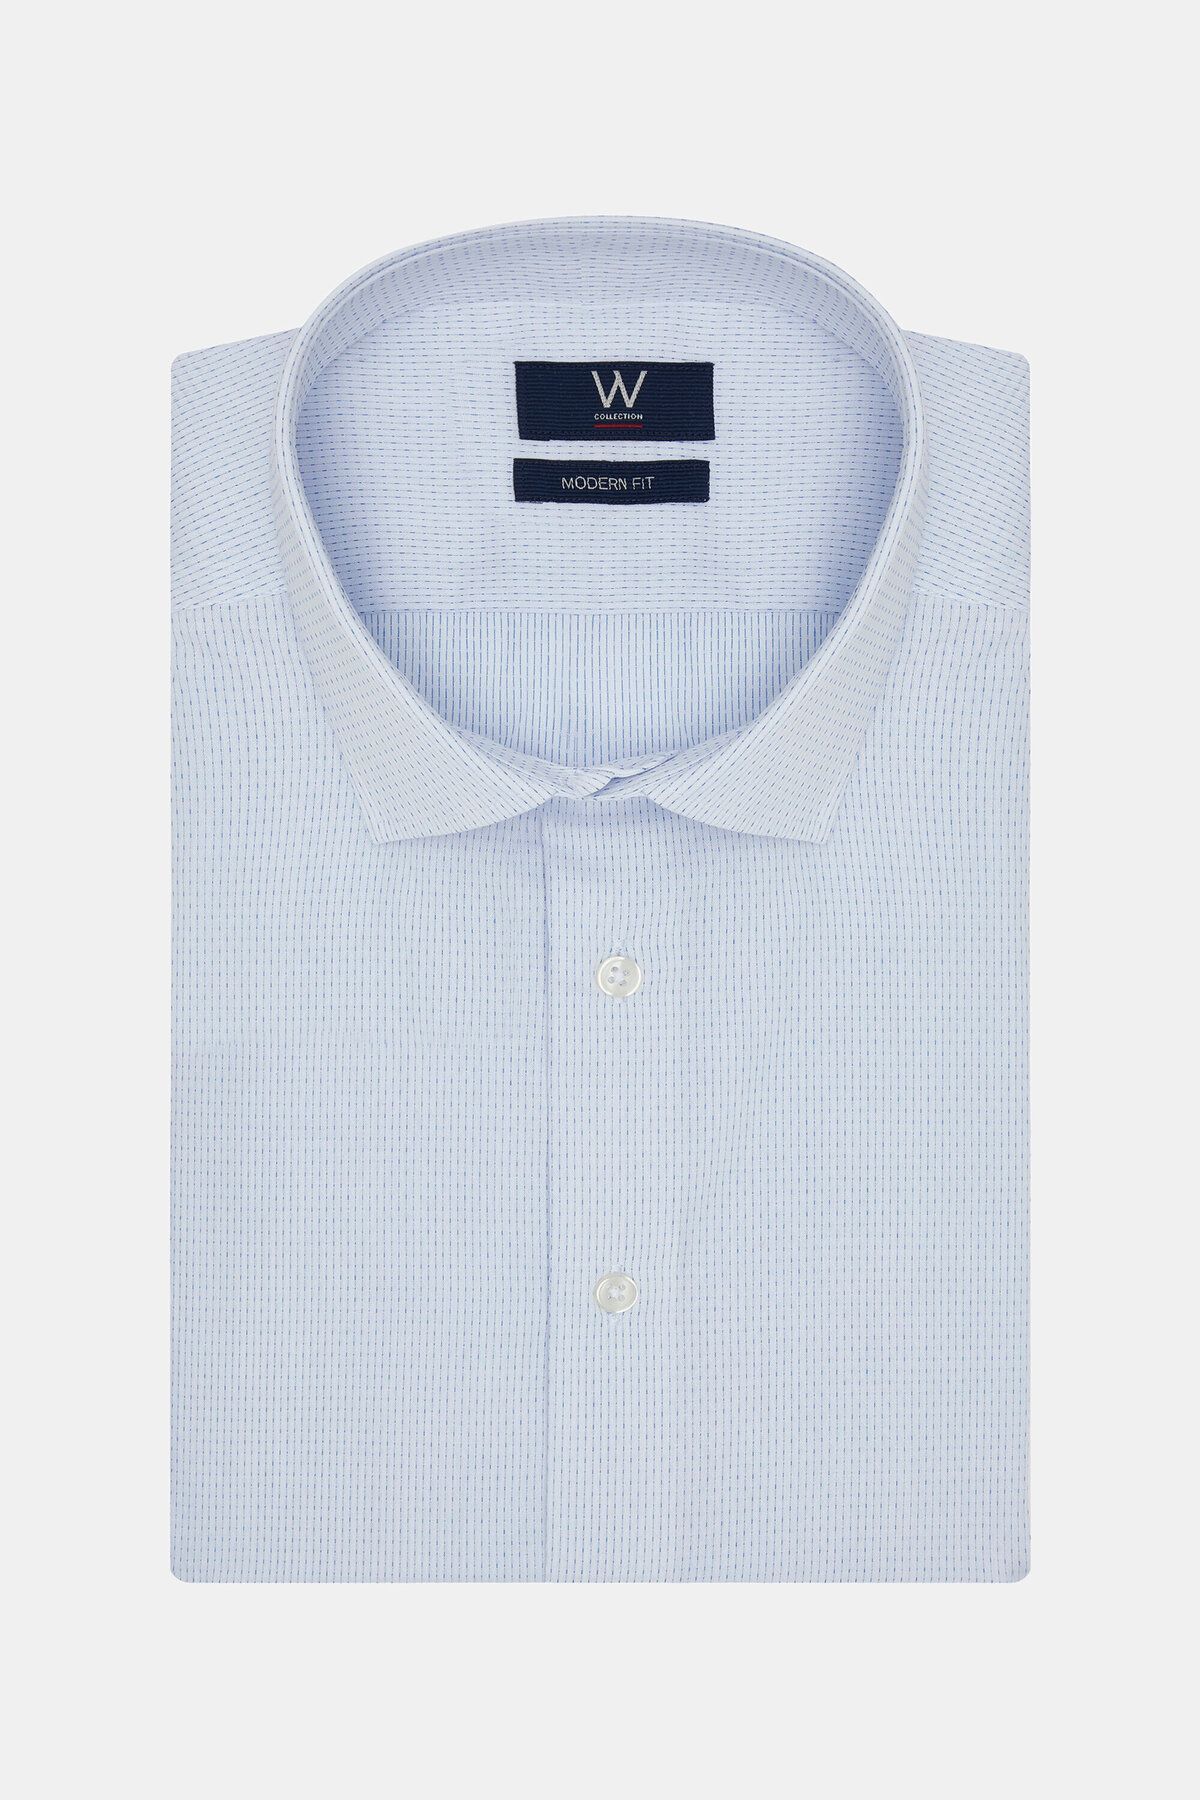 W Collection Beyaz Mavi Klasik Gömlek